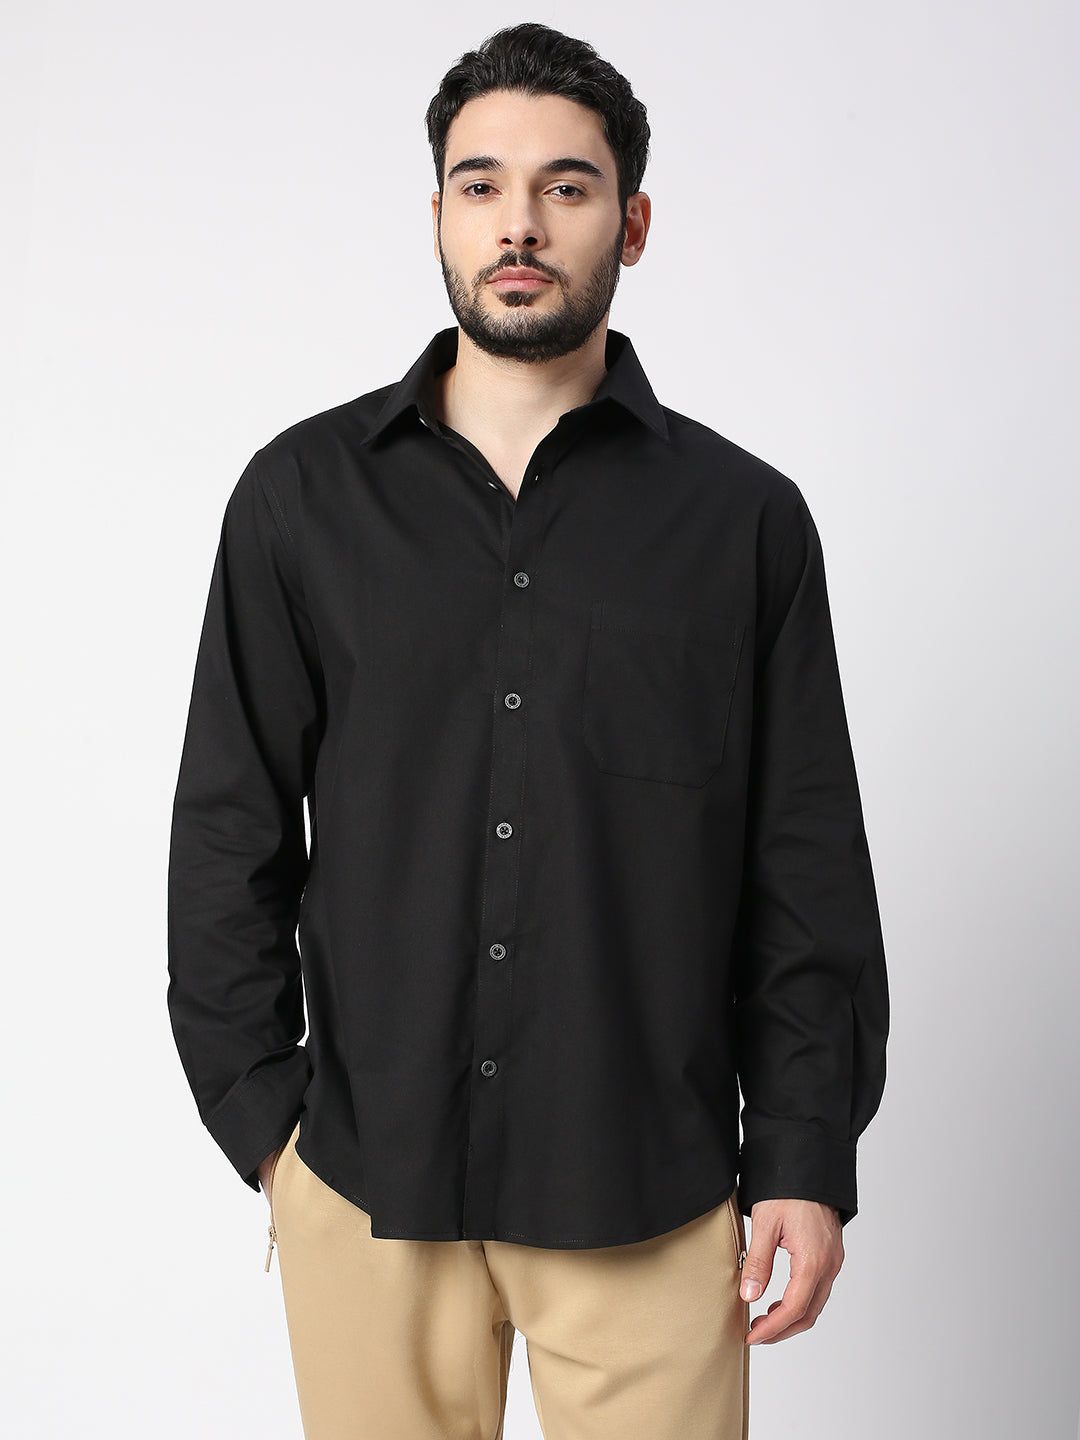 Buy Blamblack Black Color Solid Regular Shirt